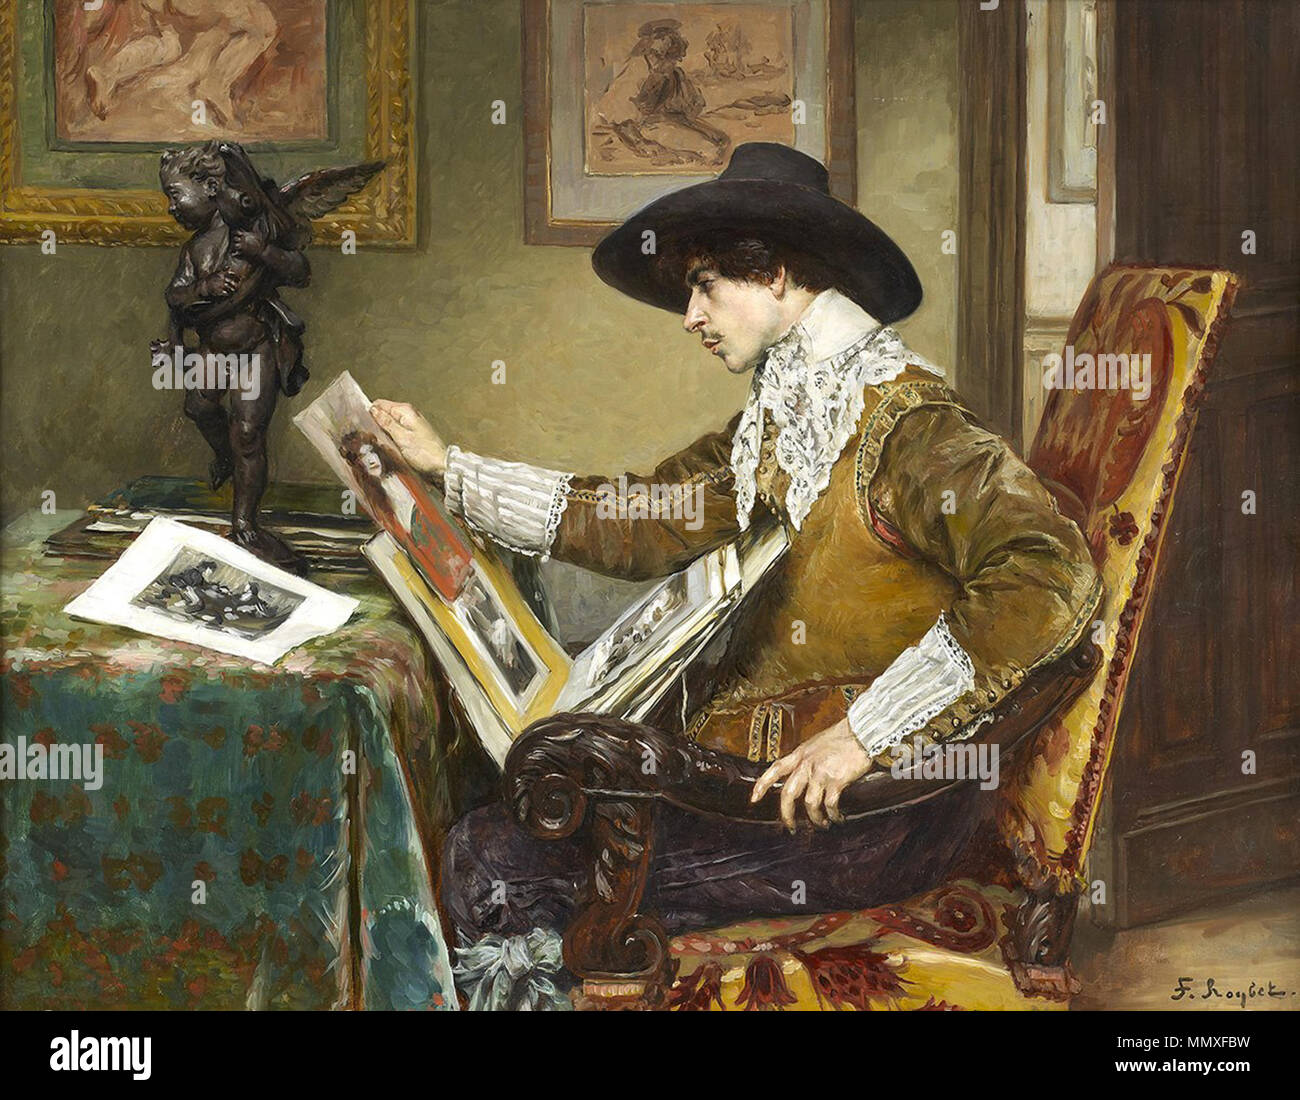 Парижский художник 4 буквы сканворд. Ferdinand Roybet художник. Ferdinand Victor Leon Roybet художник. Ferdinand Roybet (French, 1840-1920).